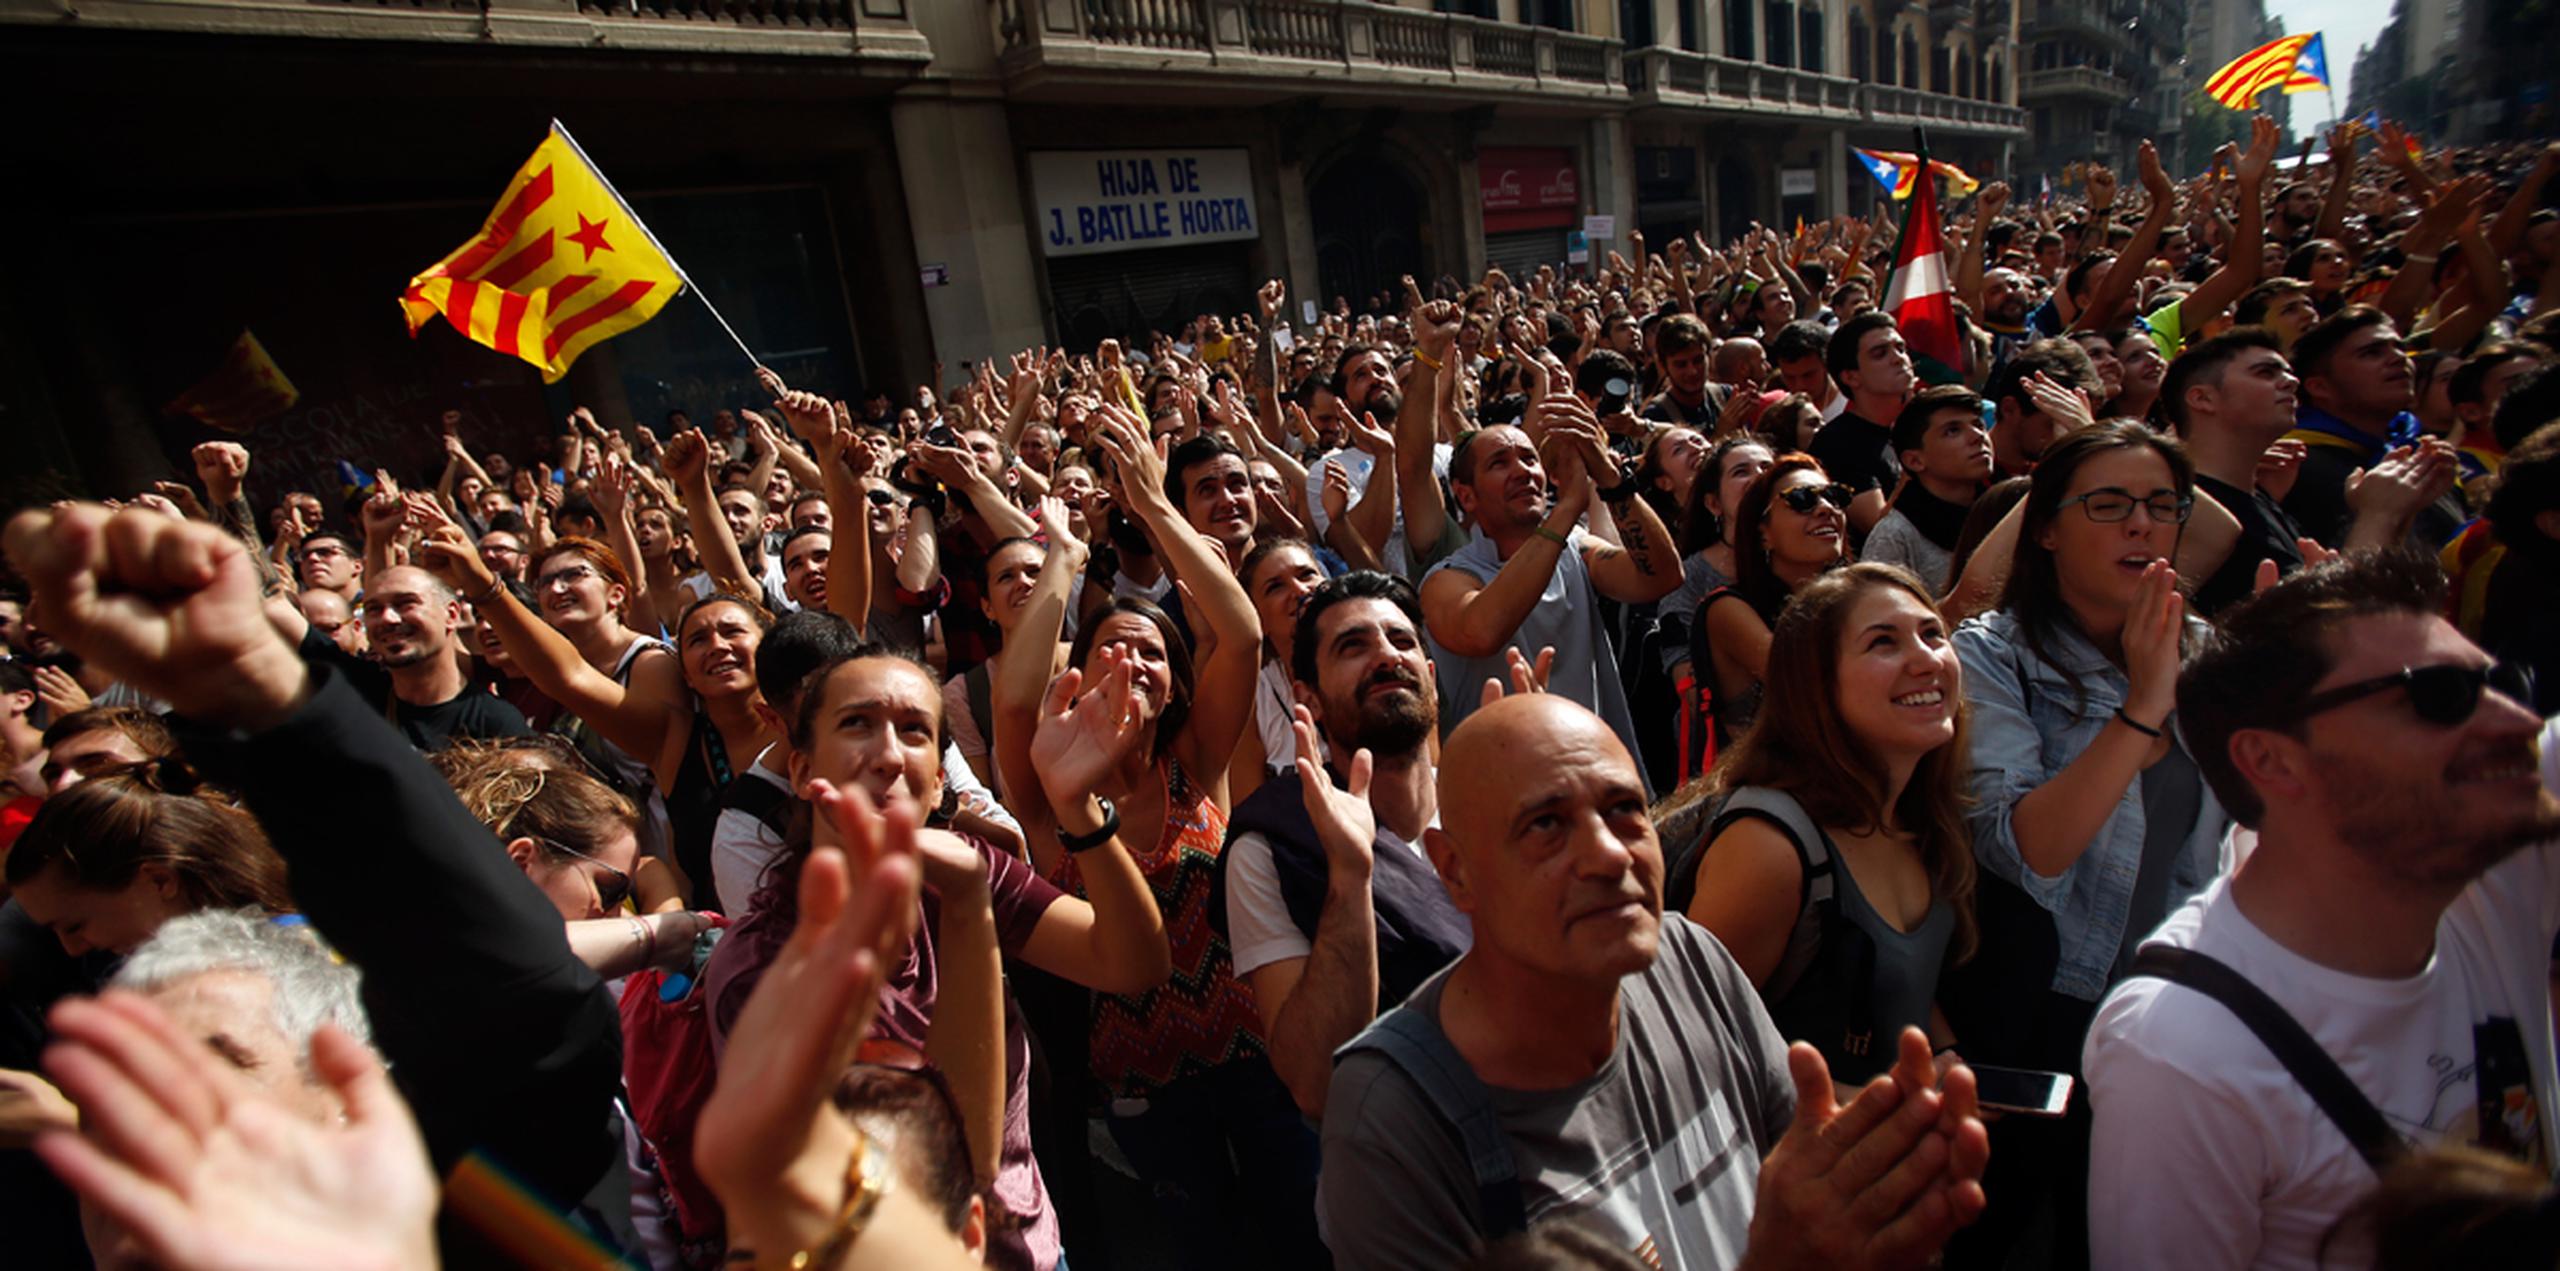 Sindicatos y grupos en defensa de la independencia de Cataluña convocan huelga y paros en protesta por la supuesta brutalidad policial para frenar un referéndum secesionista que dejó cientos de heridos. (AP/Francisco Seco)